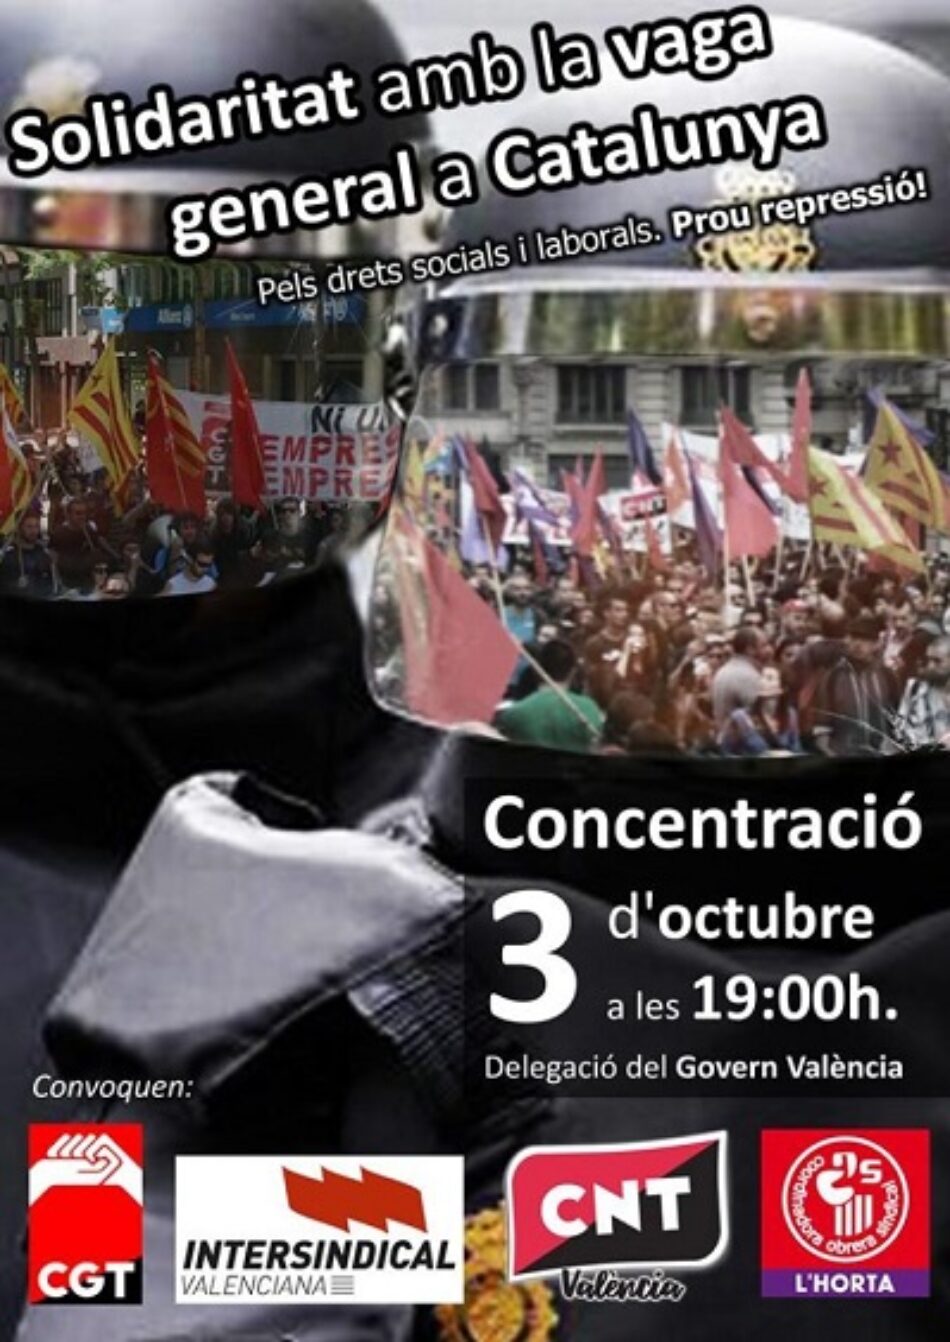 CGT, Intersindical, CNT i COS convoquen una concentració a València en solidaritat amb la Vaga General de Catalunya